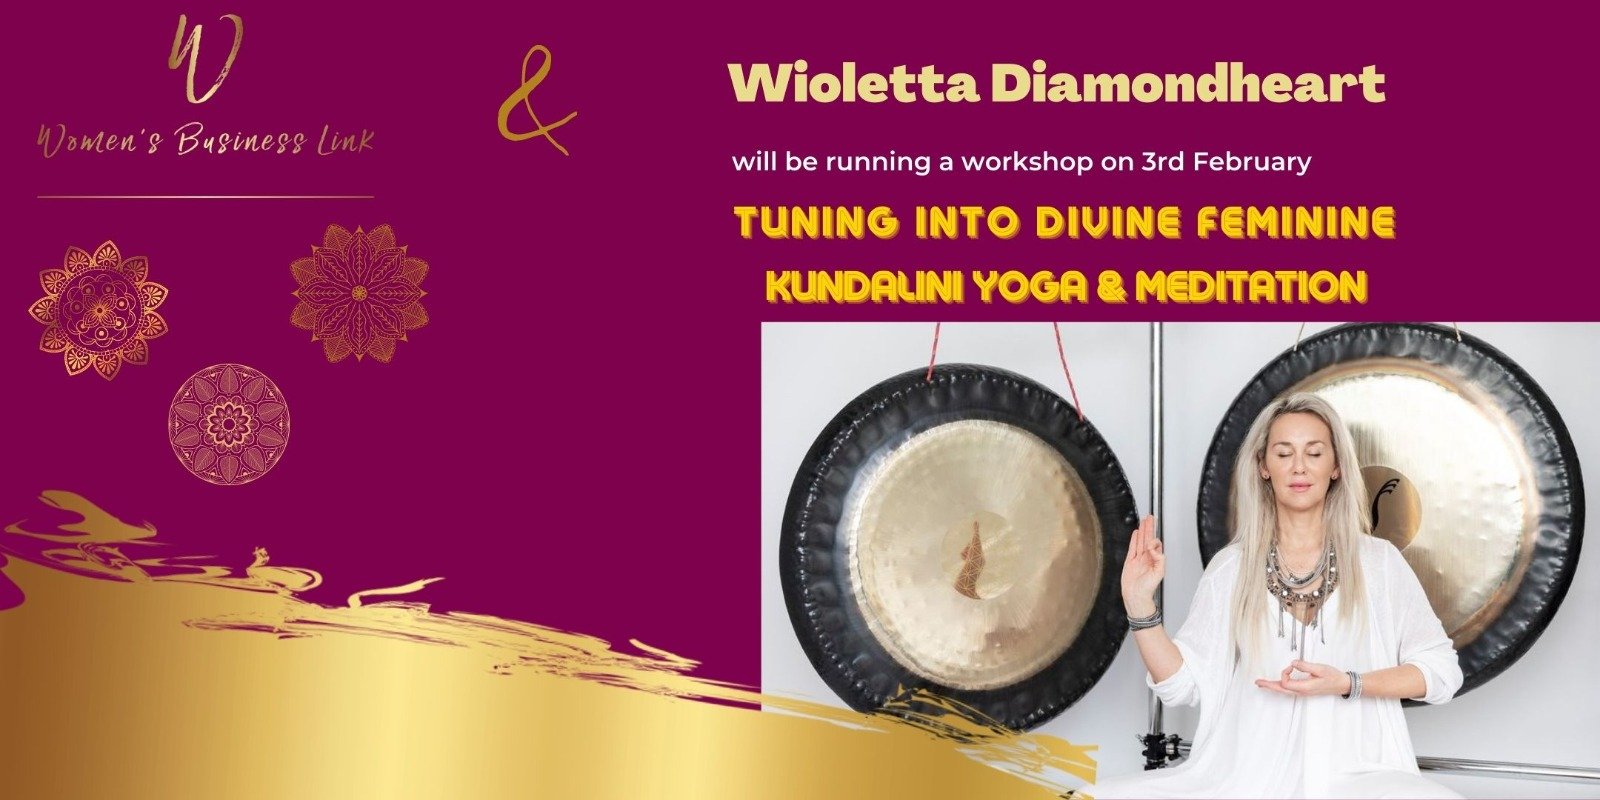 Women's Business Link Webinar with Wioletta Diamondheart